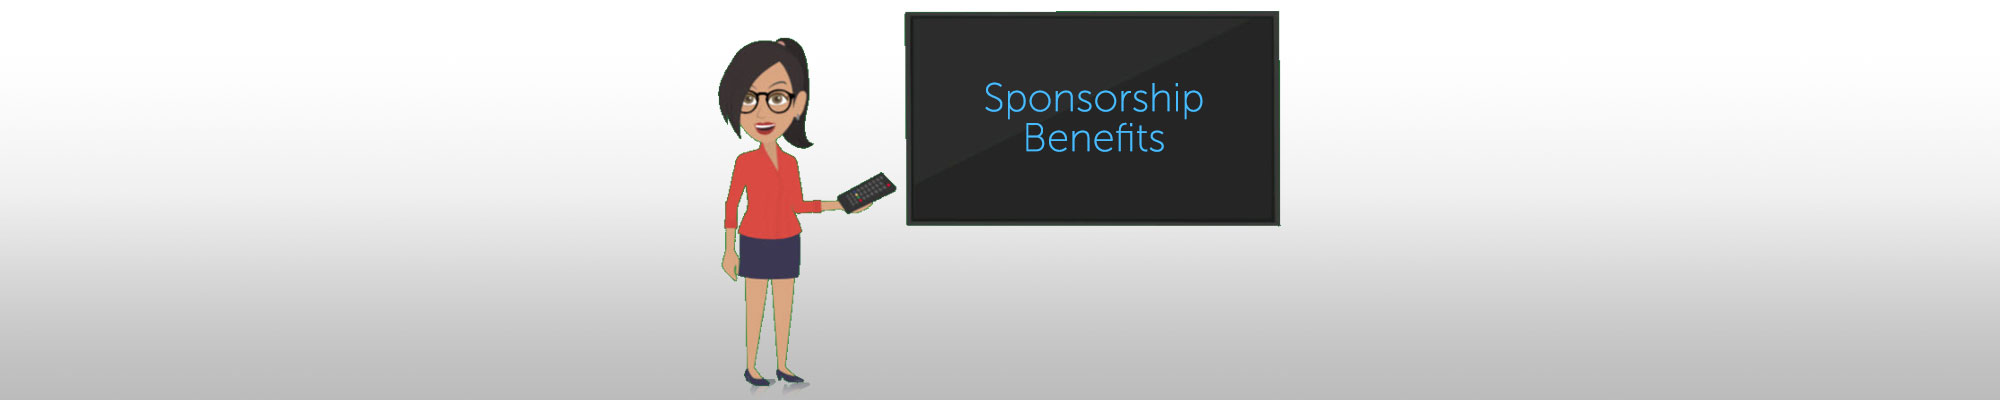 2019 sponsorships header